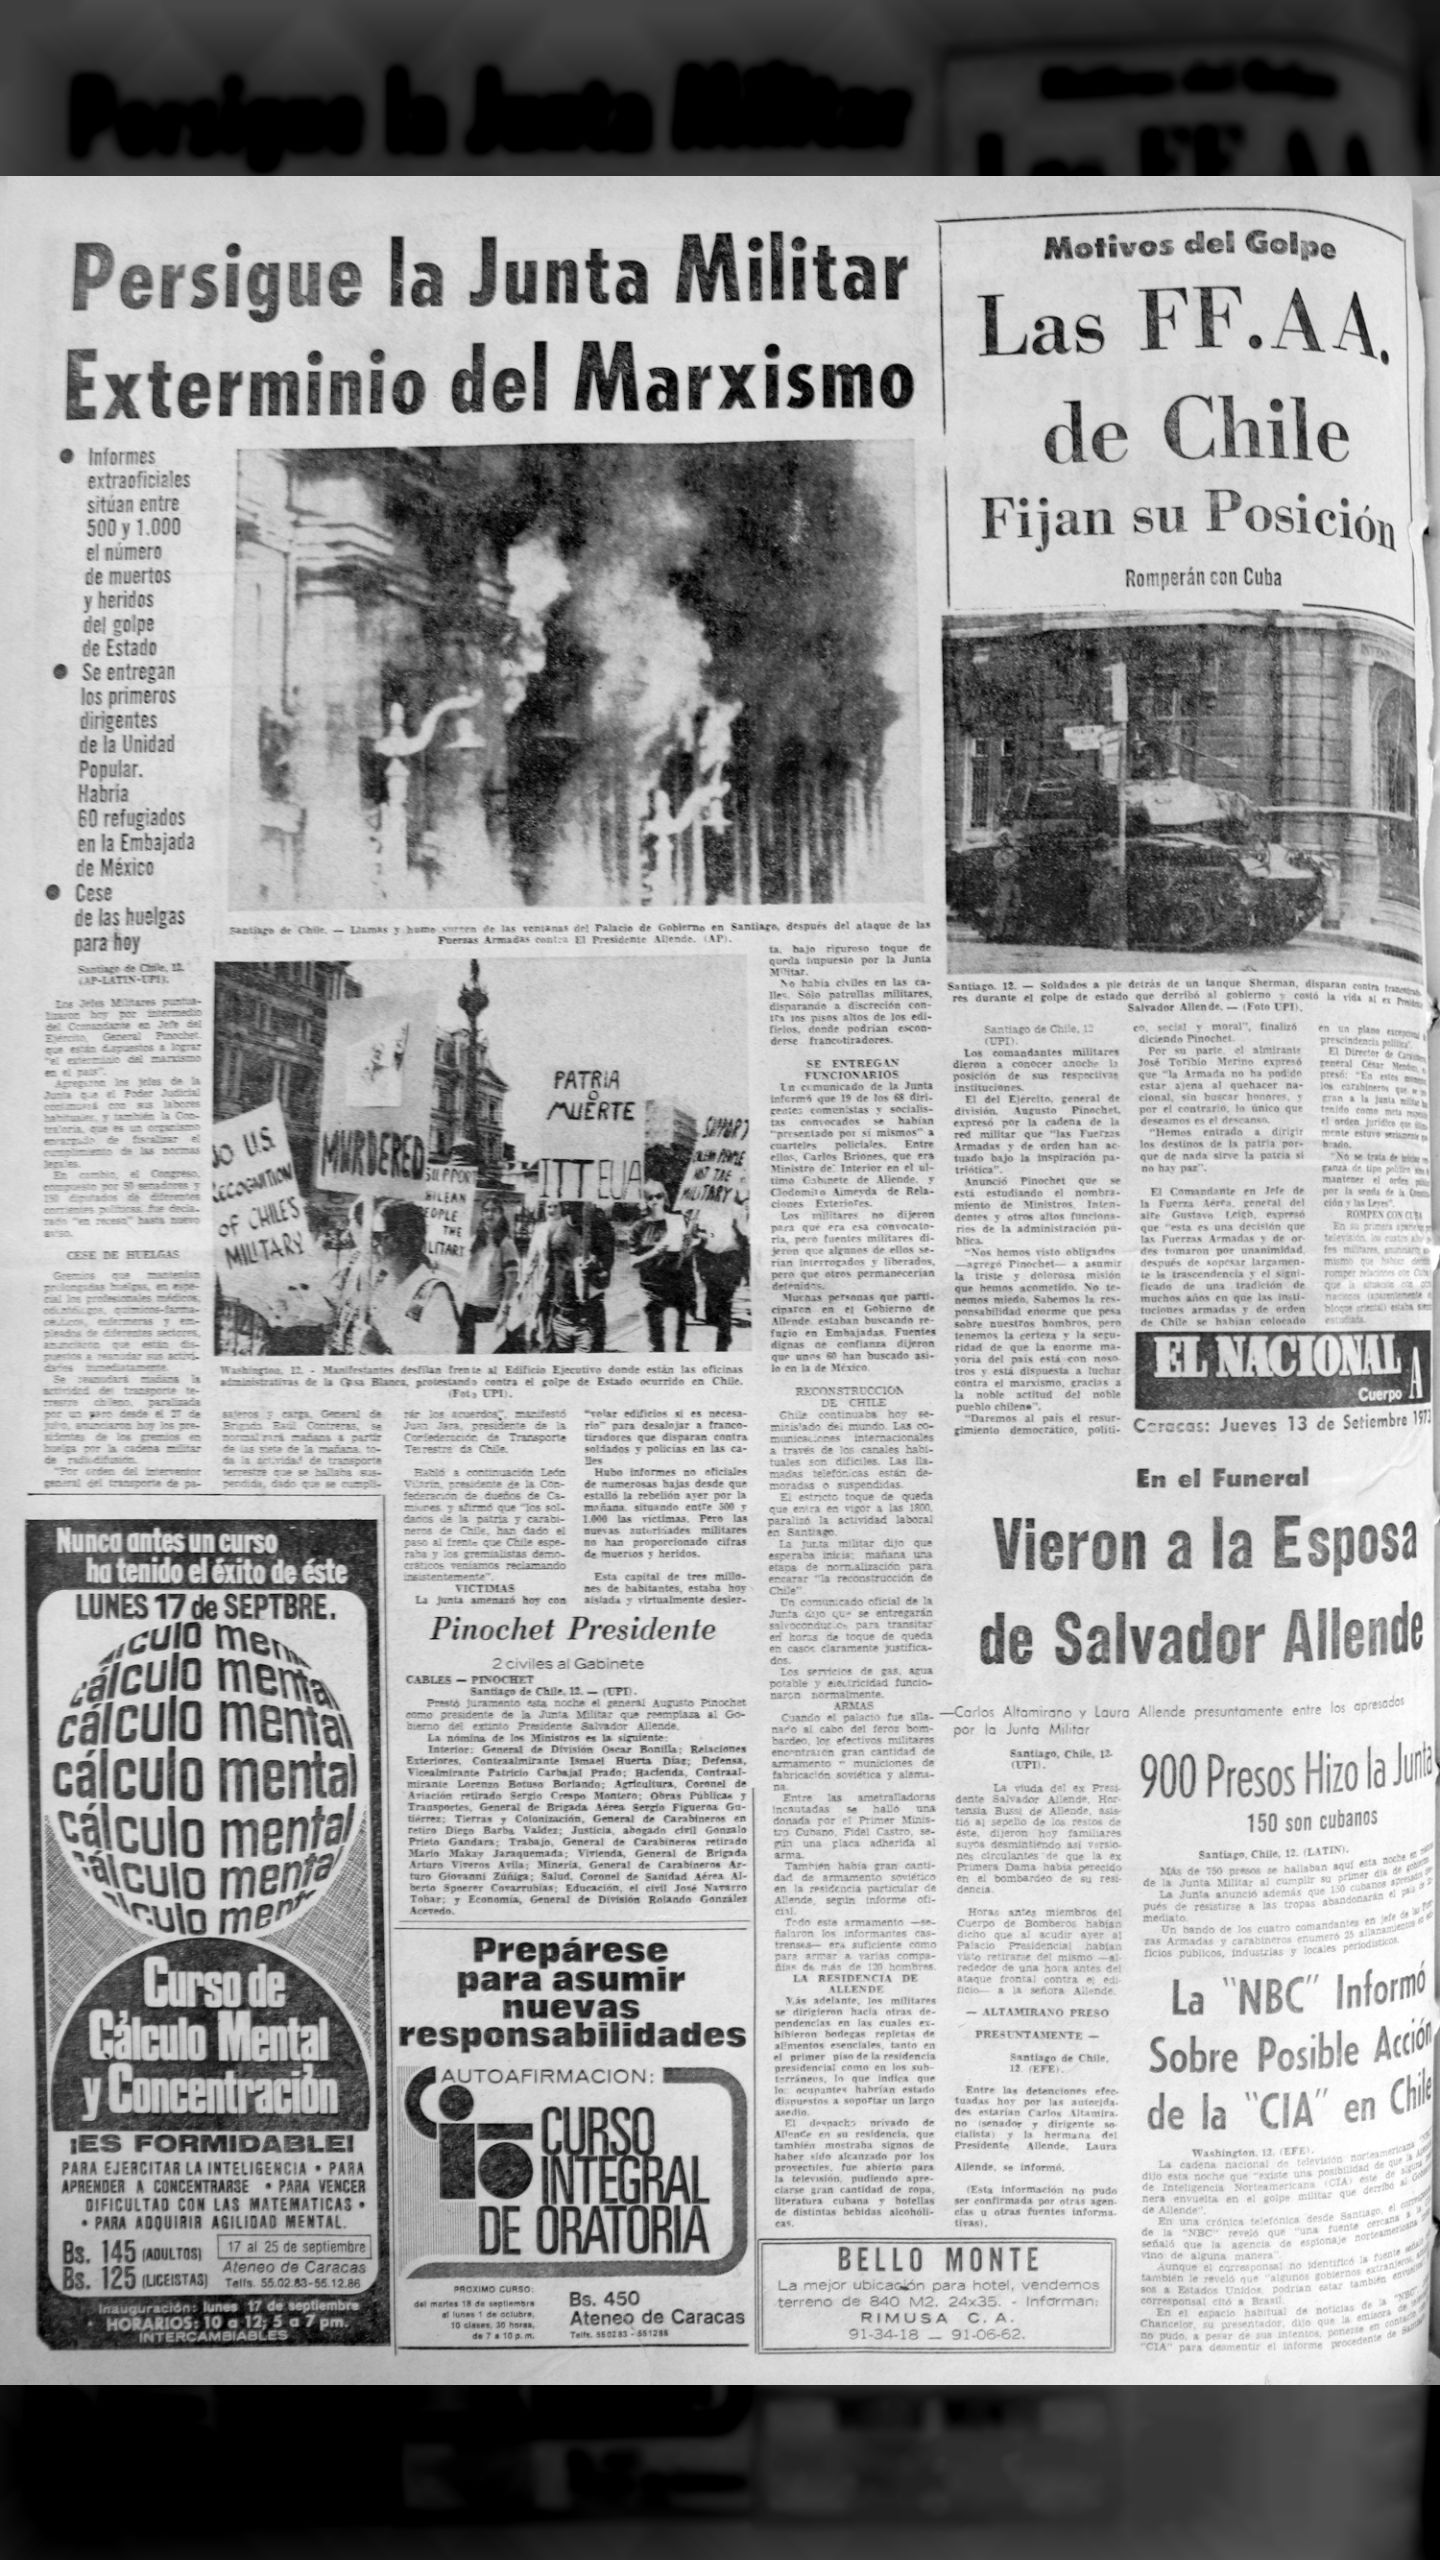 Persigue la junta militar exterminio del marxismo (El Nacional, 13 de septiembre 1973)